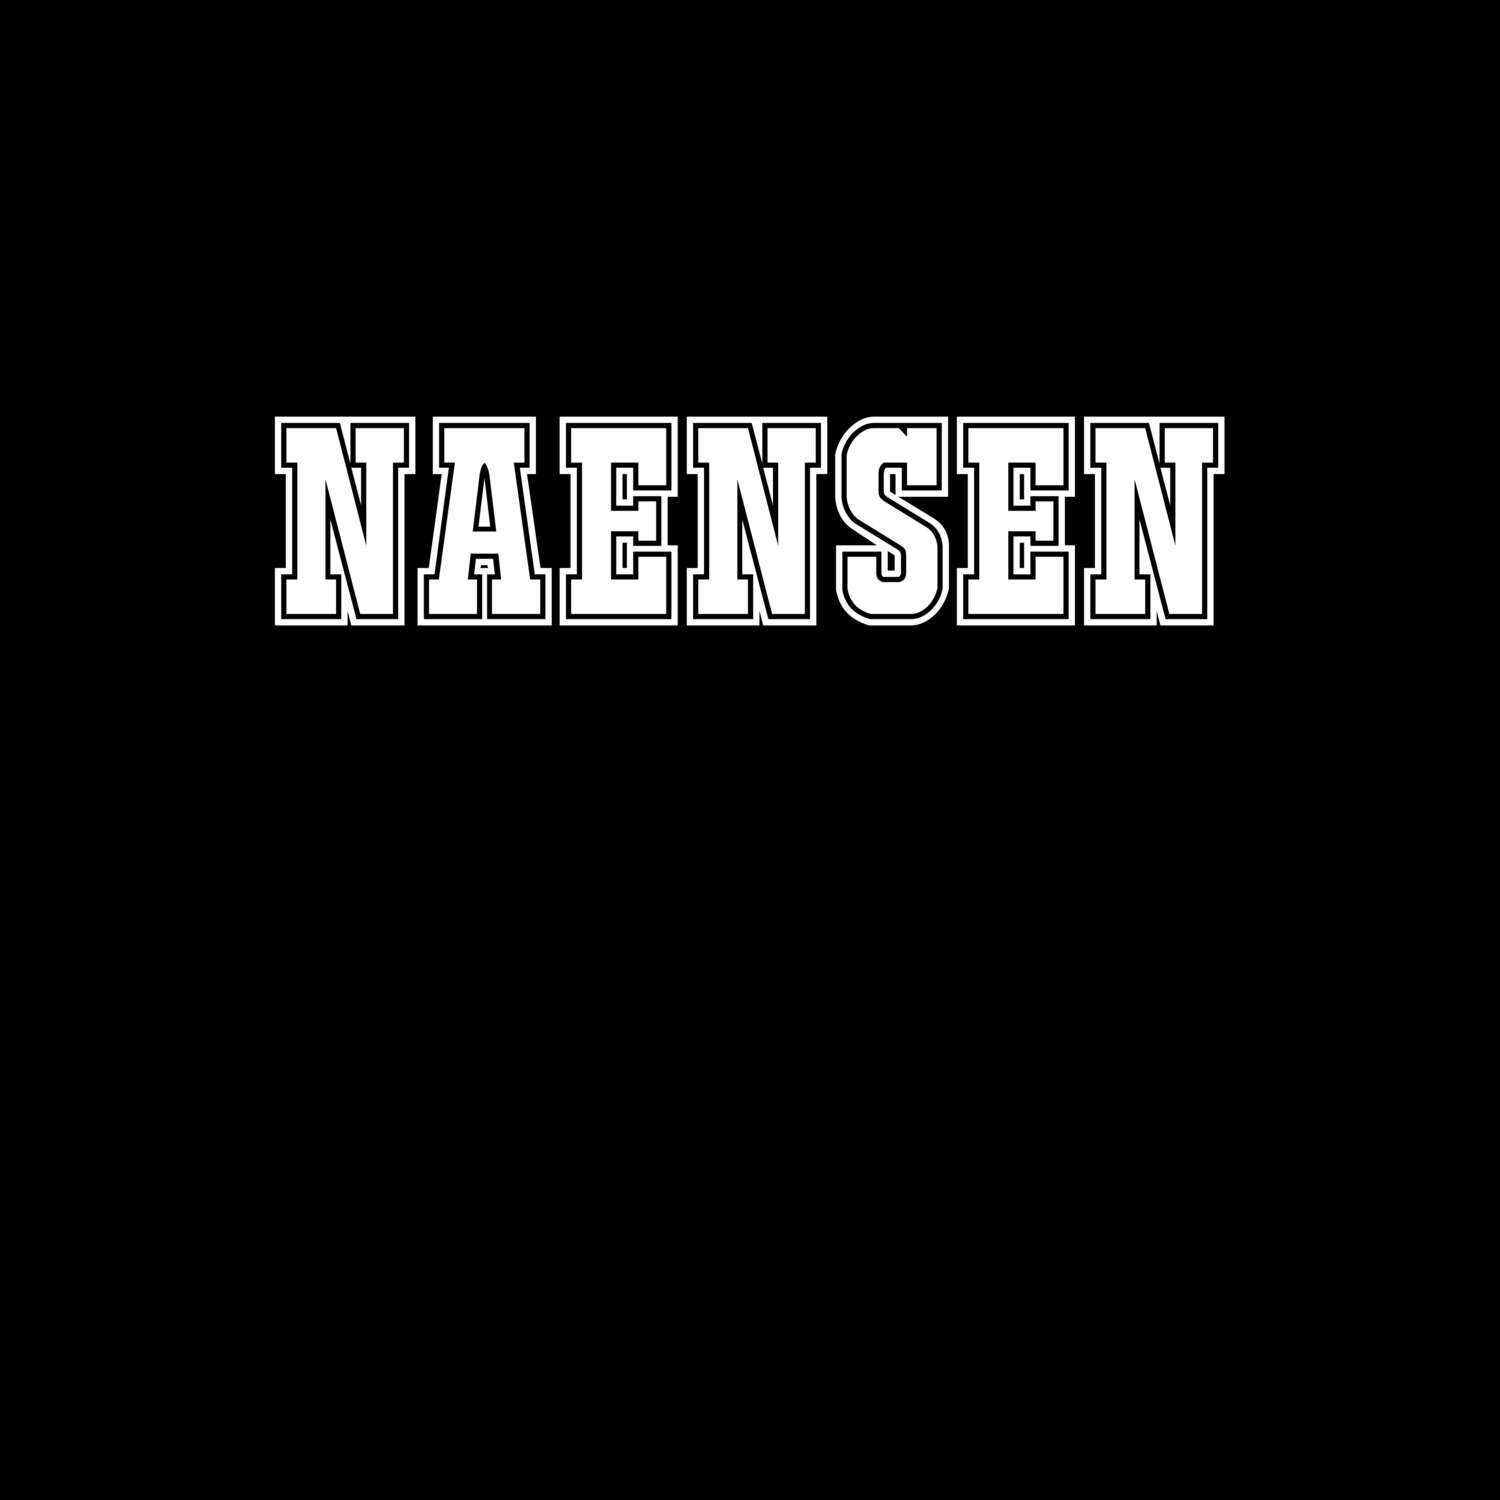 Naensen T-Shirt »Classic«